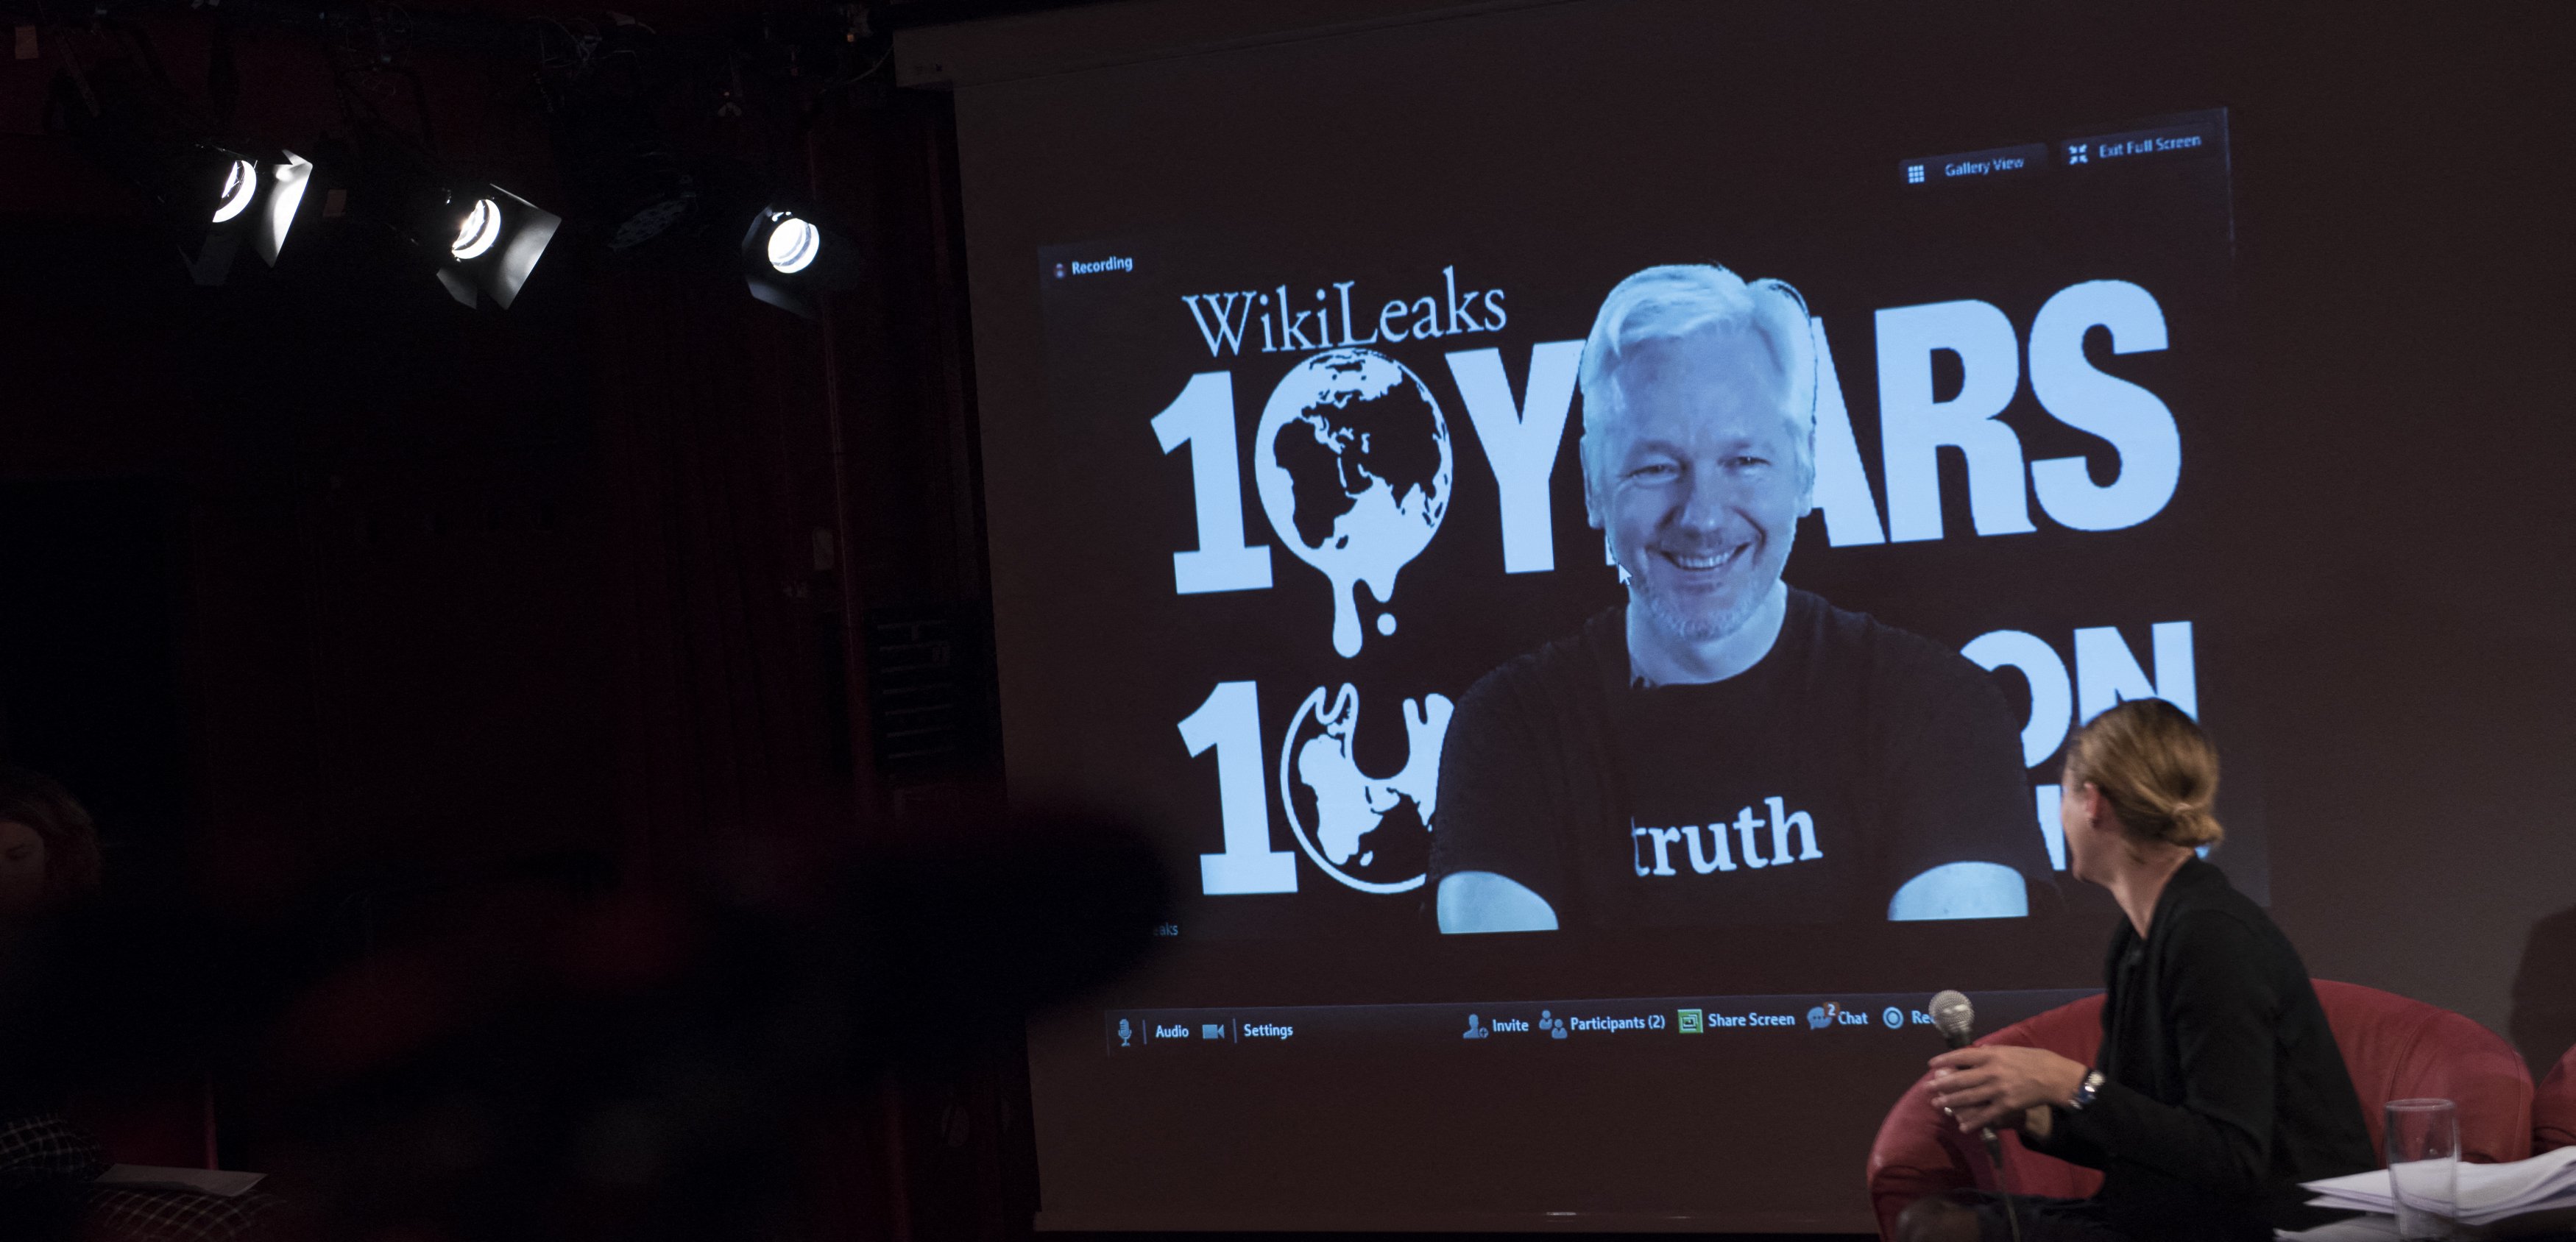 A jornalista britânica e editora da seção WikiLeaks, Sarah Harrison (à direita), olha para uma tela exibindo Julian Assange, fundador da plataforma de vazamentos online WikiLeaks, enquanto ele se dirige aos jornalistas por meio de uma conexão de vídeo ao vivo durante uma coletiva de imprensa no 10º aniversário da plataforma em 4 de outubro de 2016 em Berlim. Julian Assange 'está livre' e foi libertado de uma prisão de segurança máxima em Londres onde estava detido há cinco anos, disse sua organização WikiLeaks em 24 de junho, após chegar a um acordo de confissão nos EUA.